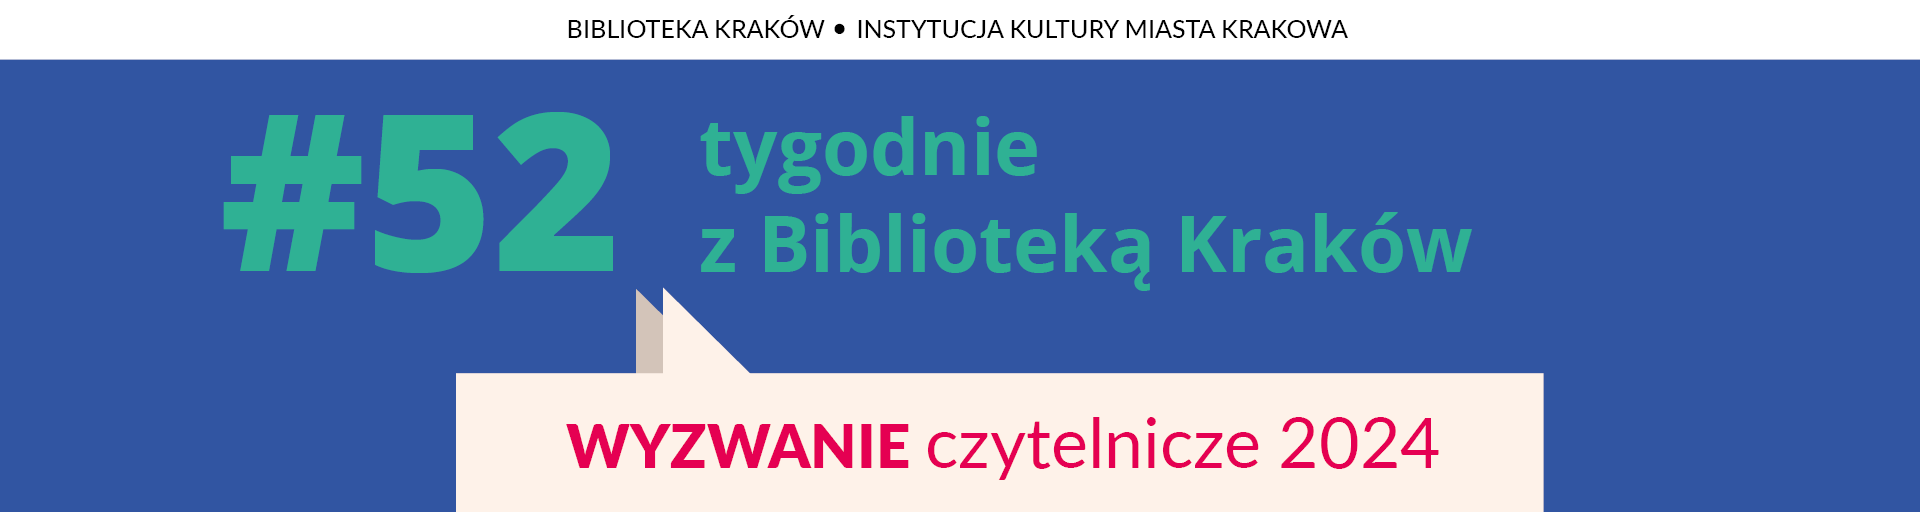 #52 tygodnie z Biblioteką Kraków 2024